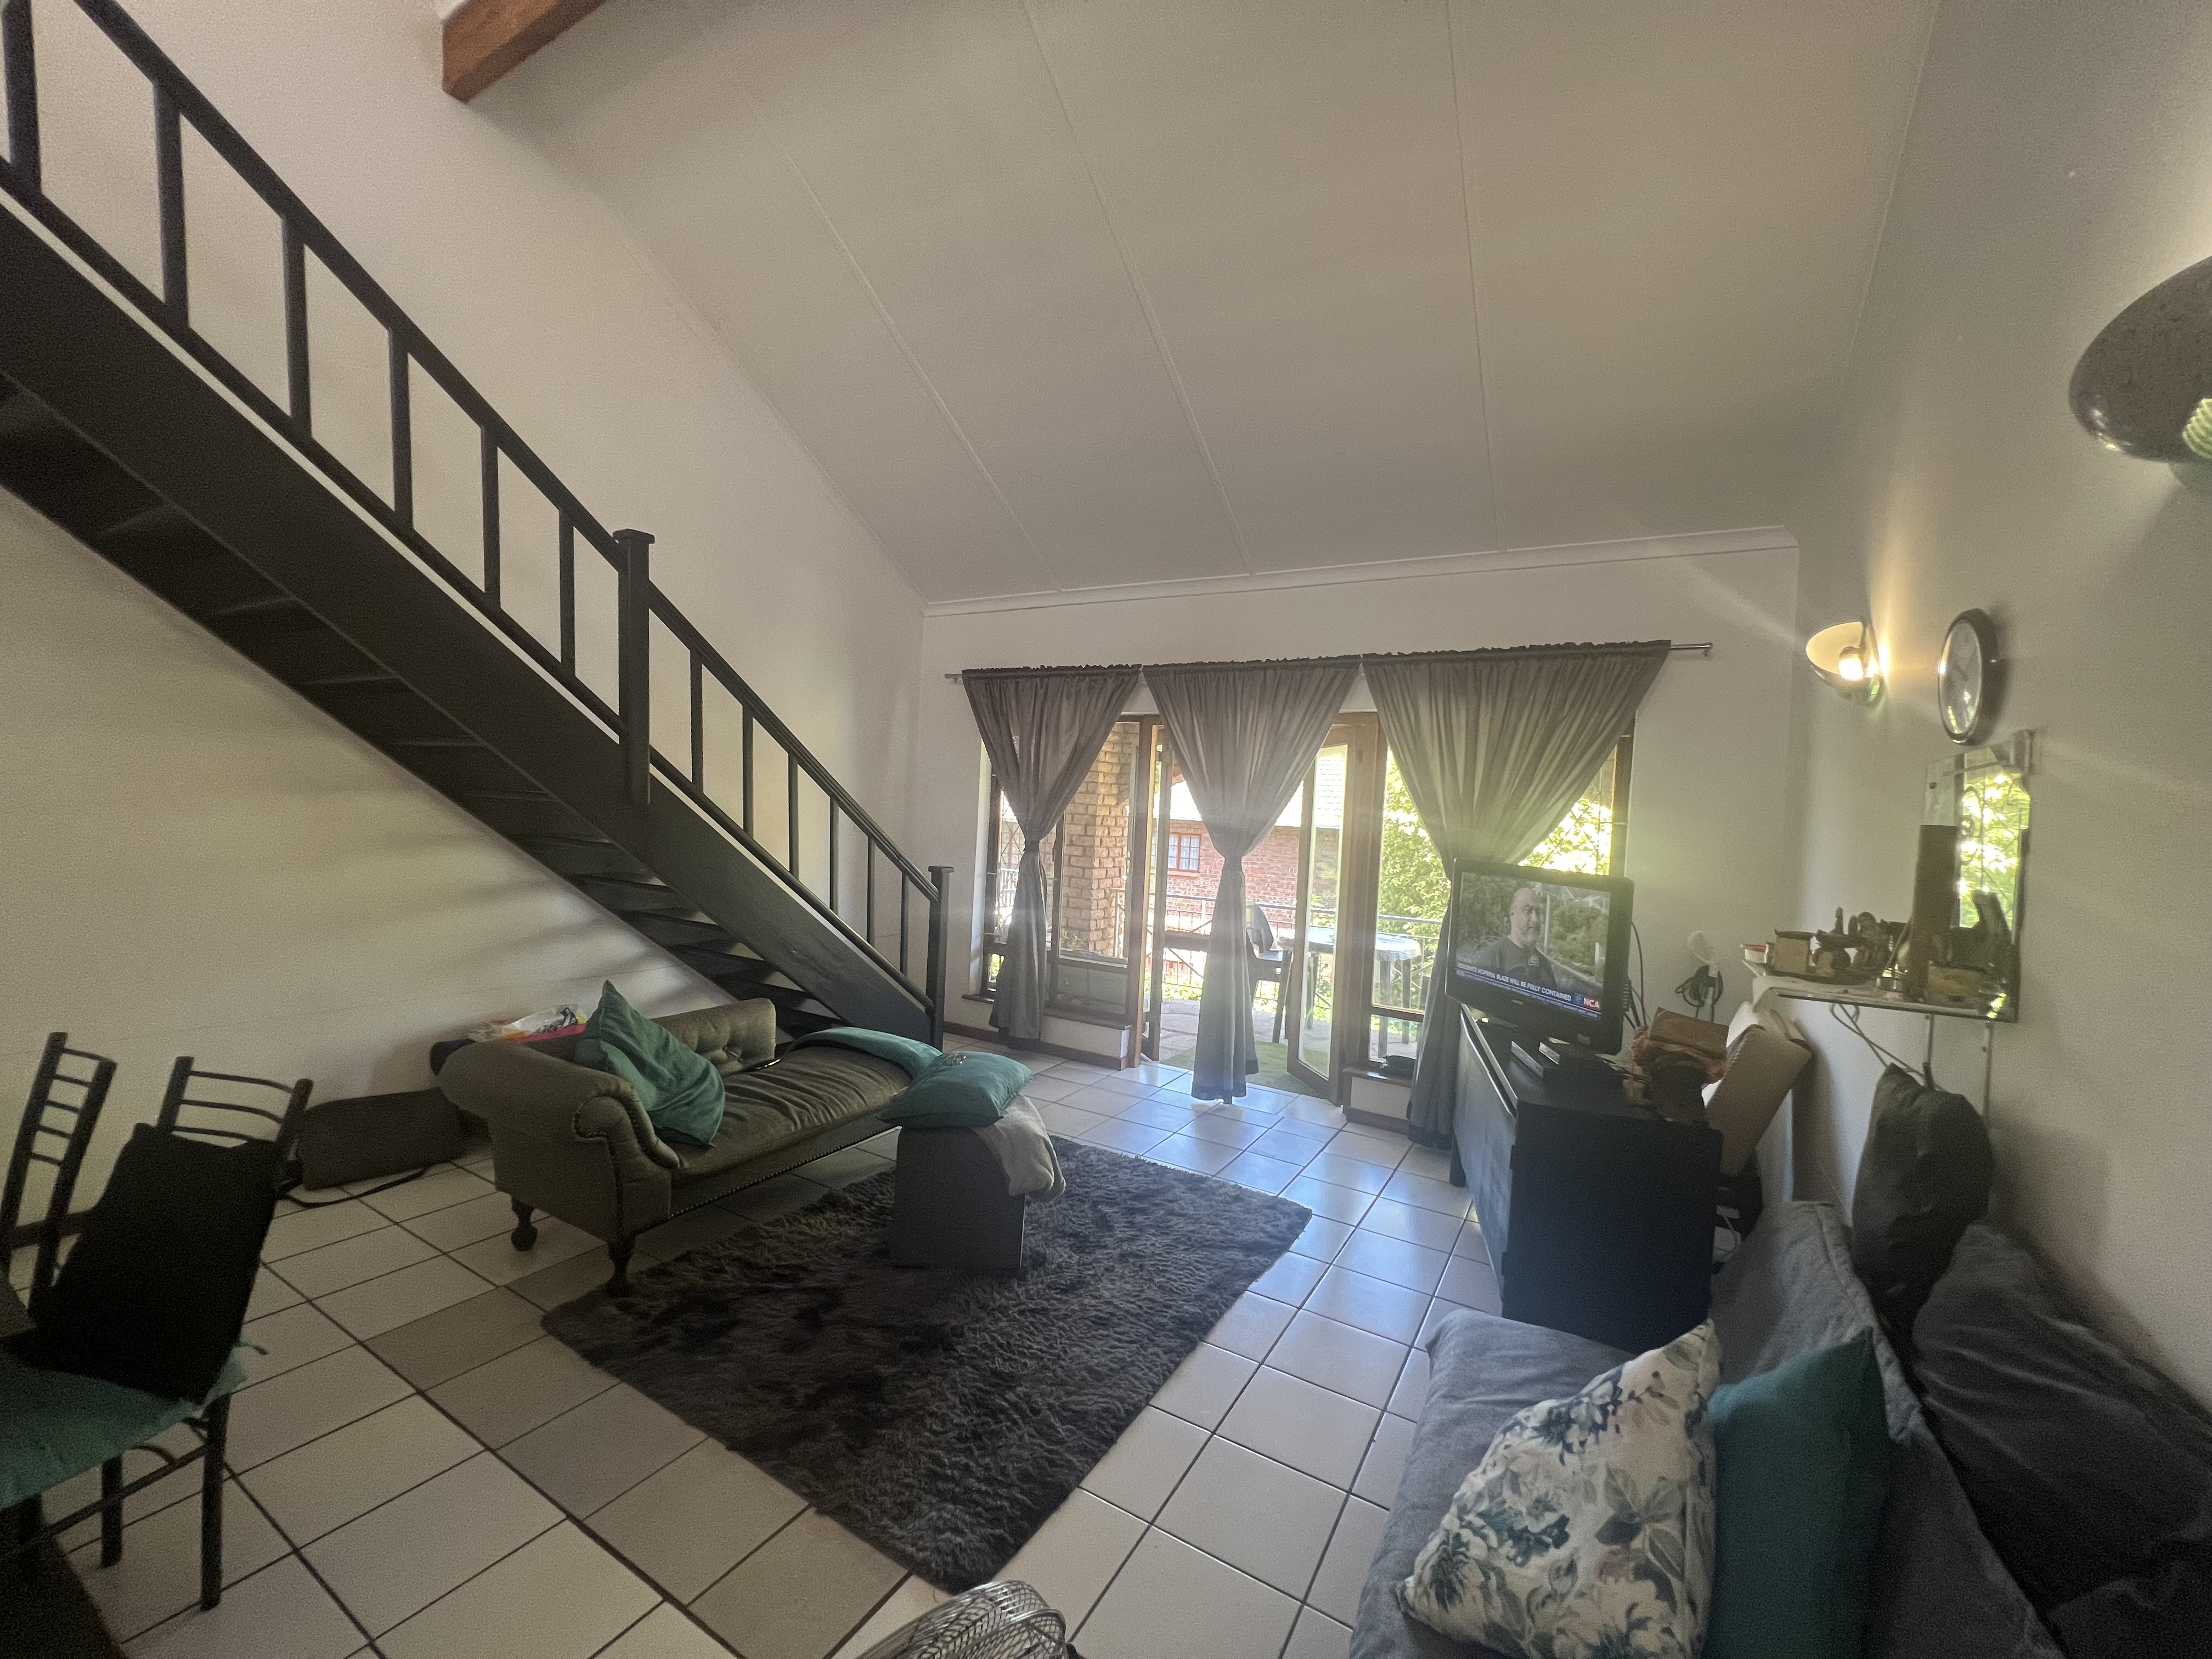 1 Bedroom Property for Sale in Pelham KwaZulu-Natal